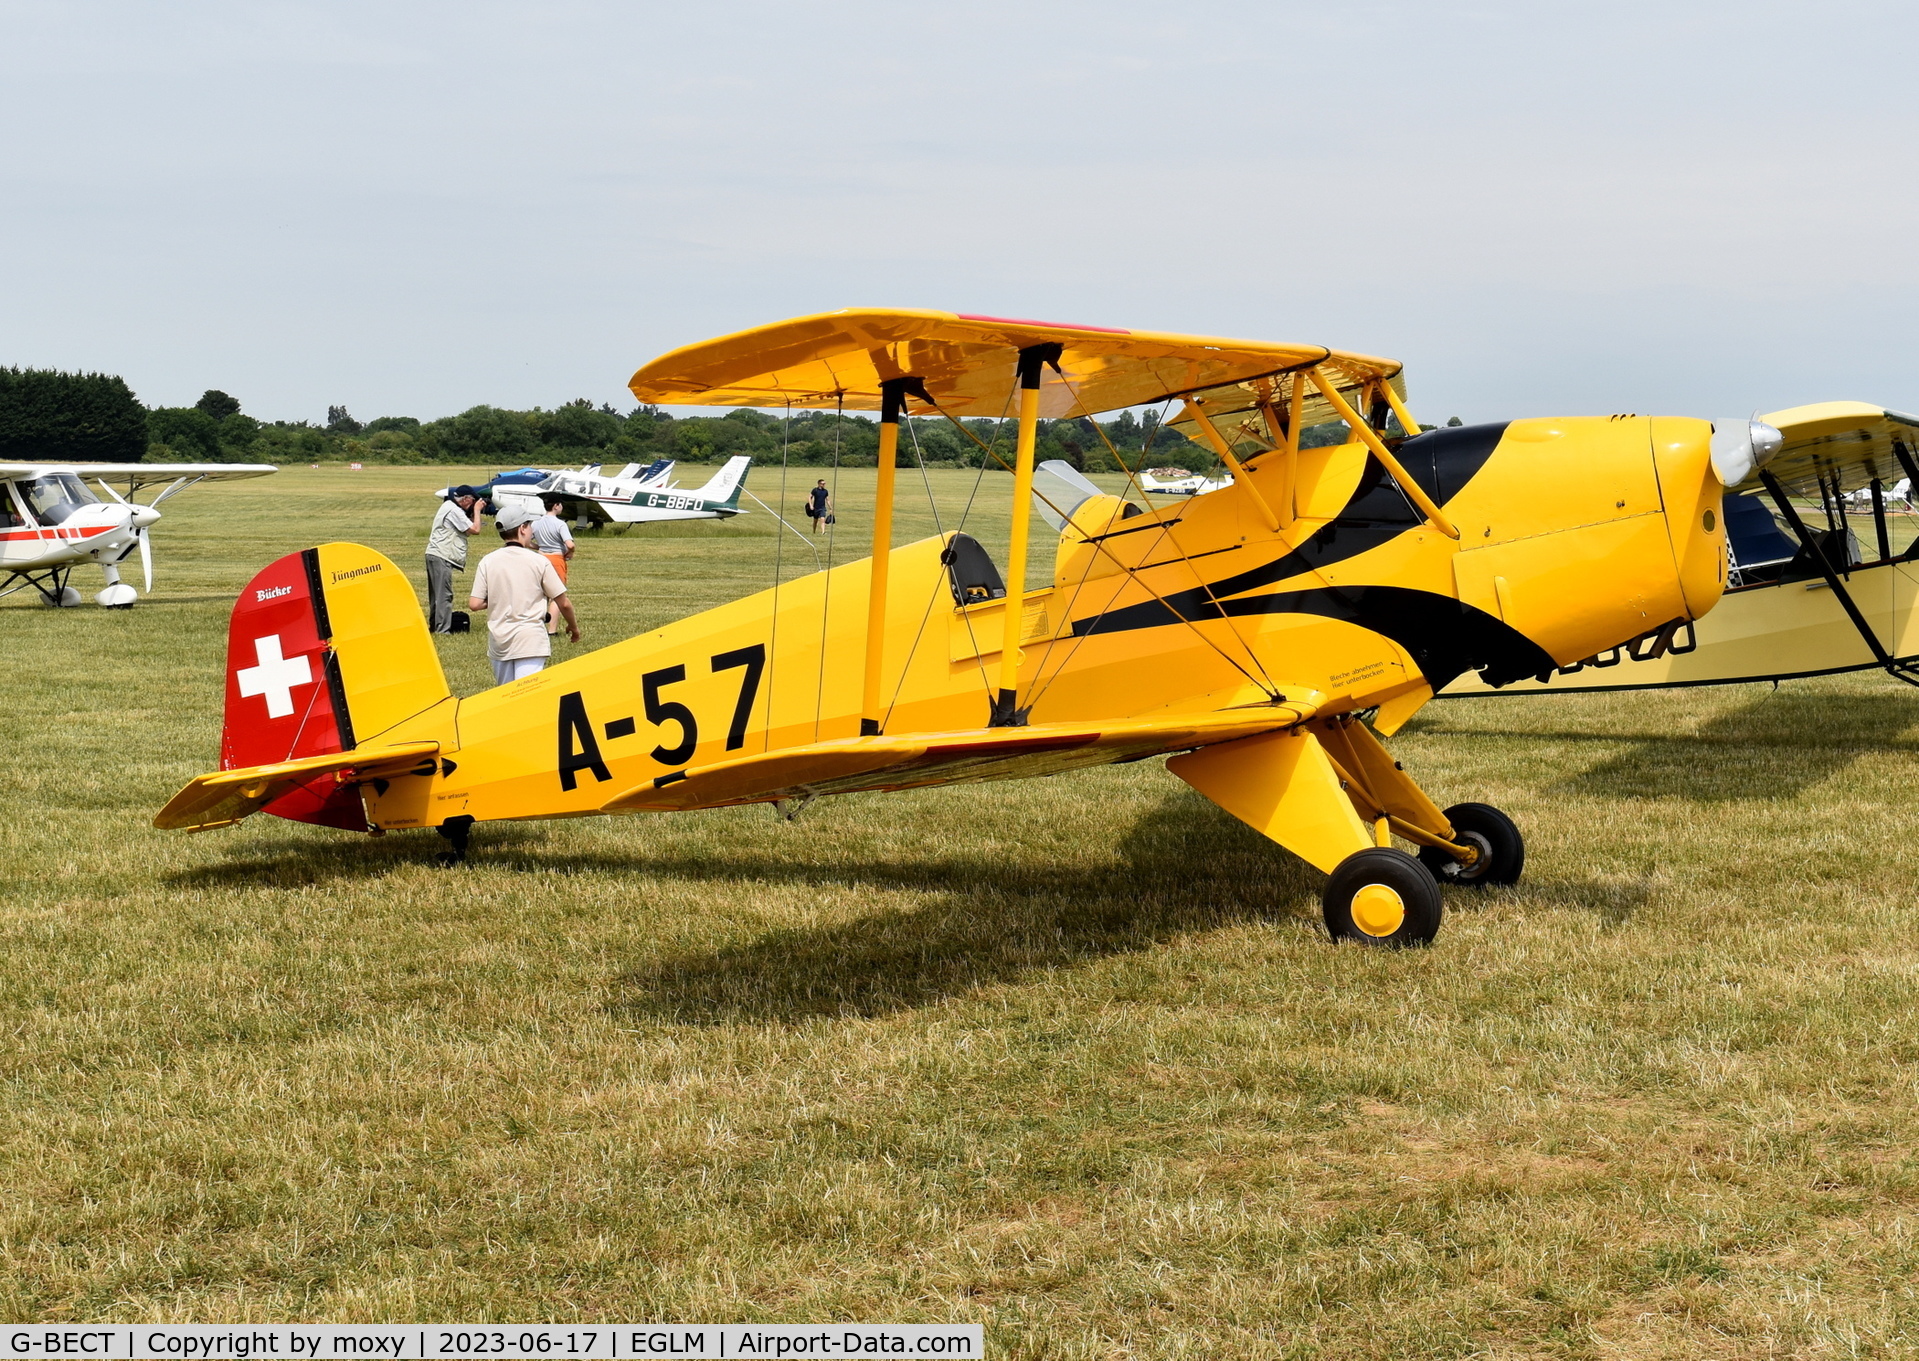 G-BECT, 1957 CASA 1-131E Srs 2000 Jungmann C/N 3974, CASA 1-131E Srs 2000 at White Waltham. Ex E3B-338. Marked as Swiss Air Force serial A-57.